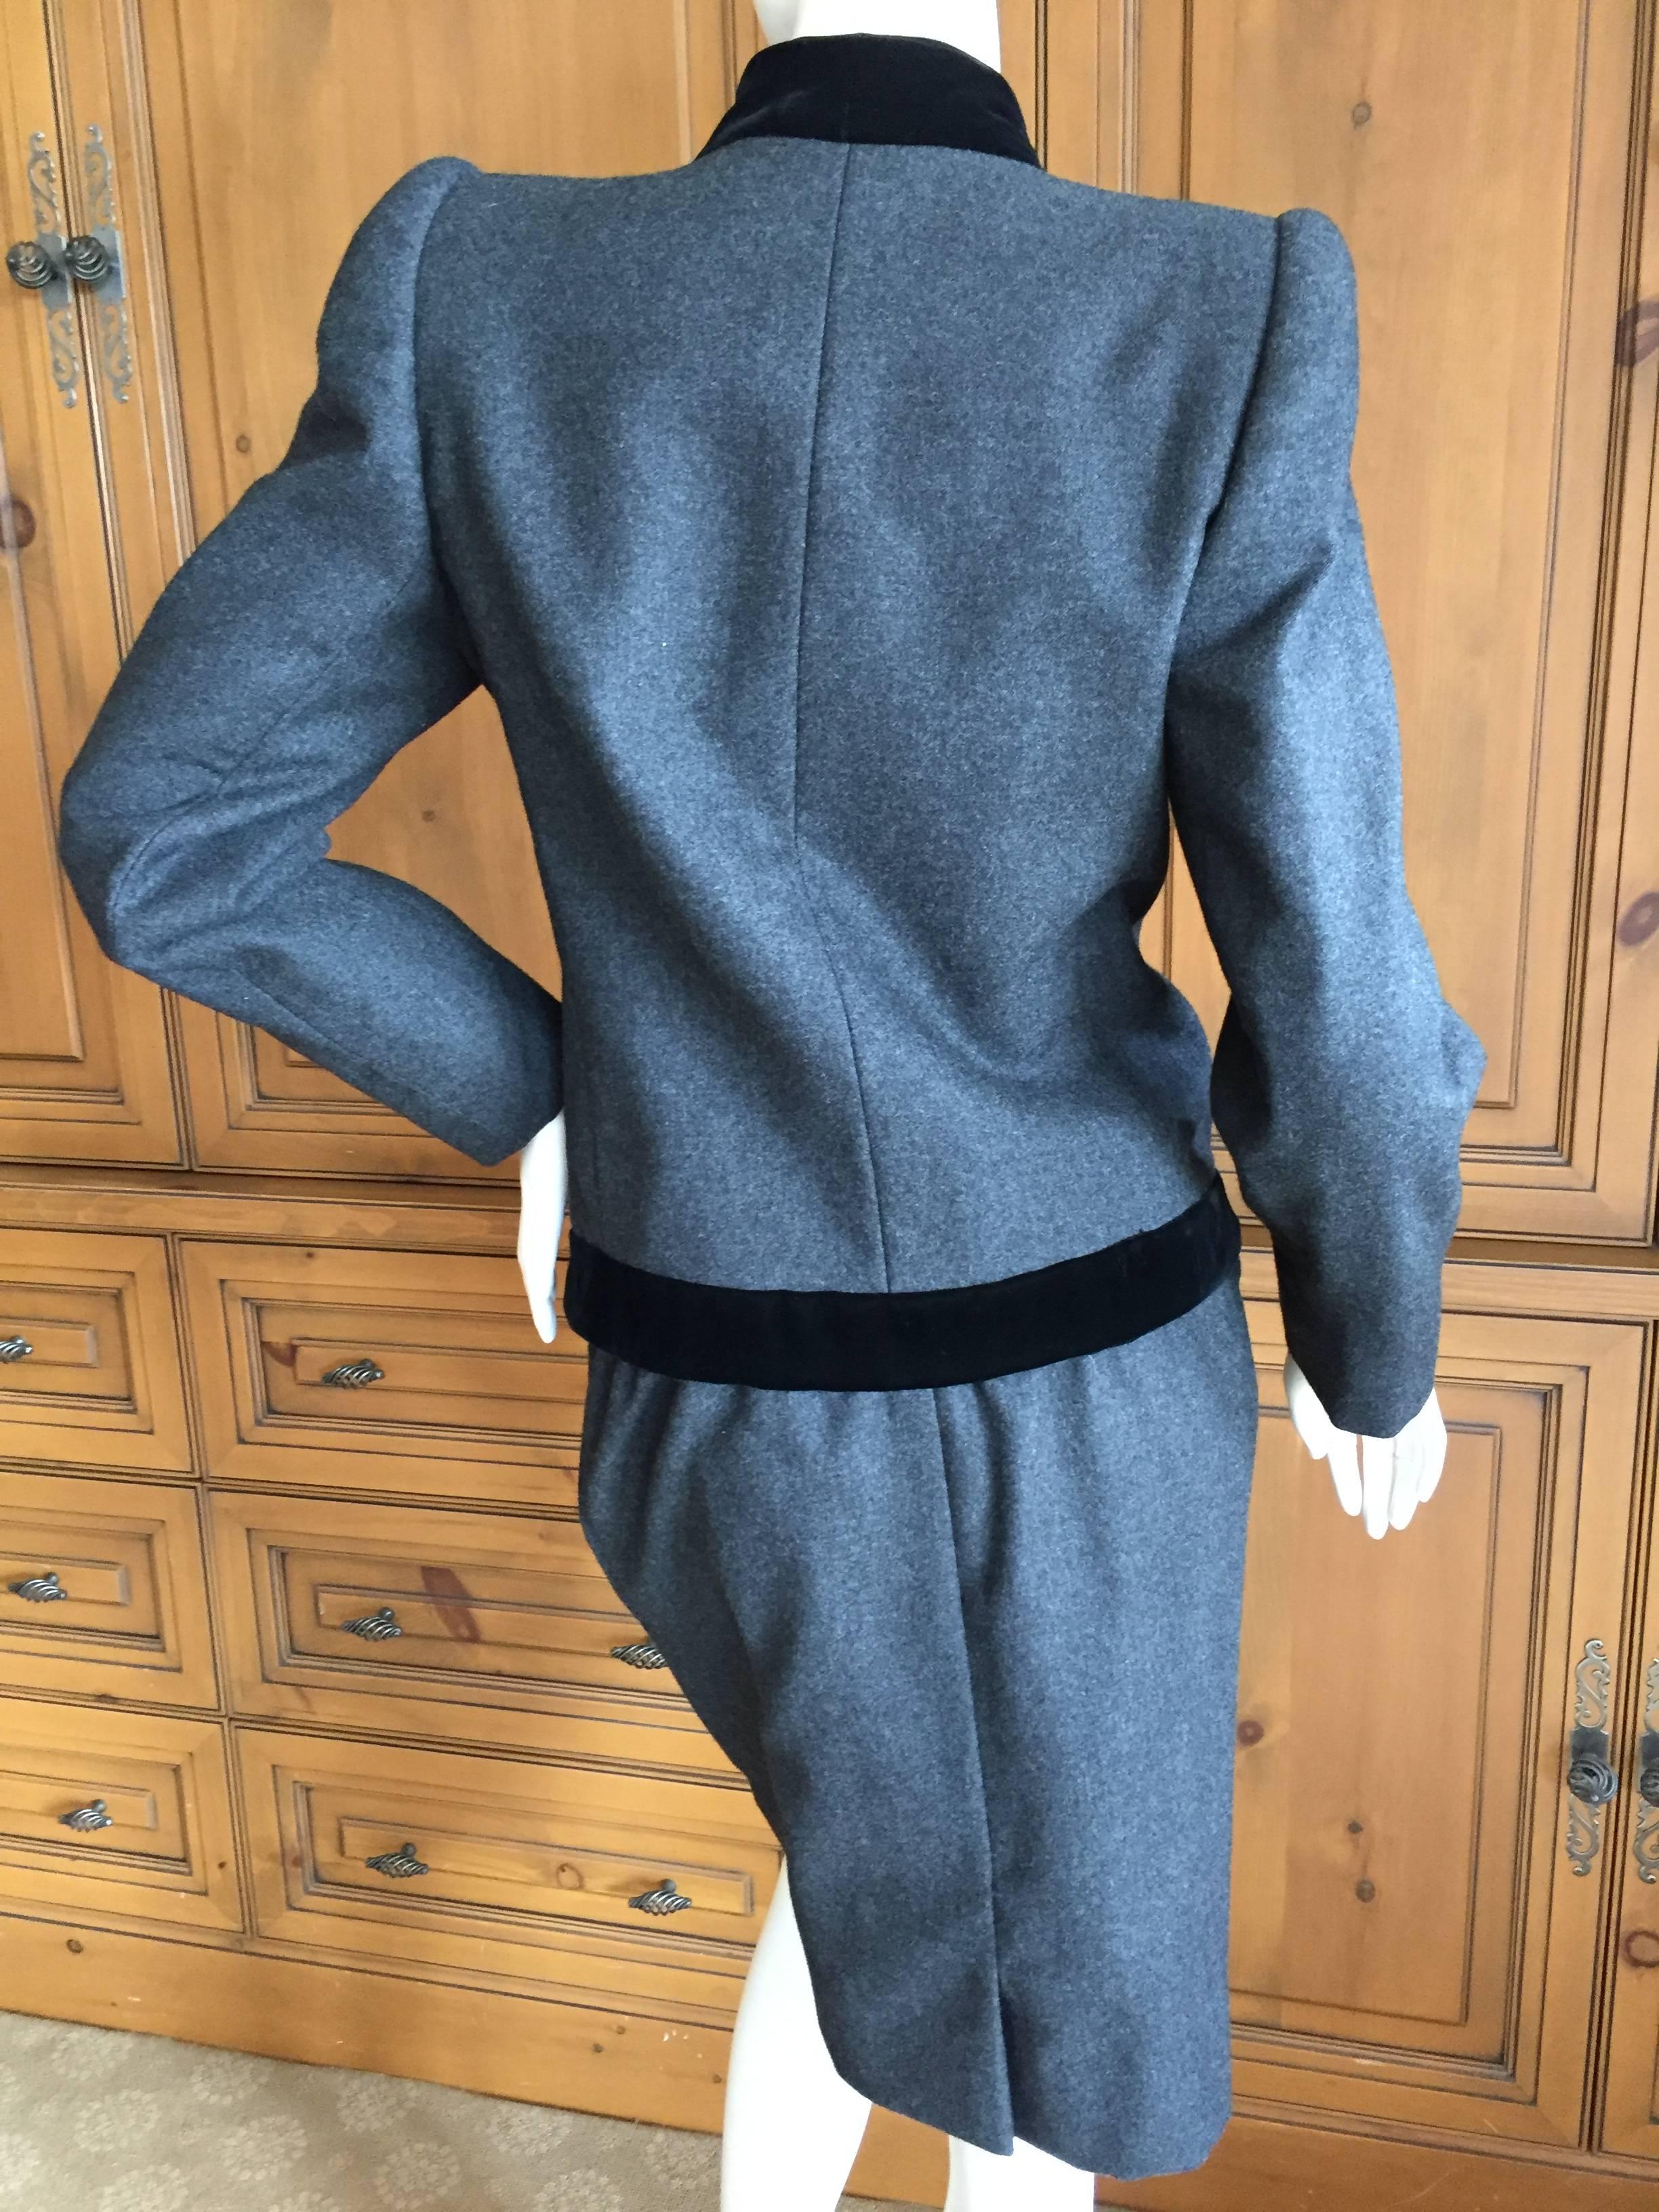 Jacqueline de Ribes Paris Black and Gray Day Suit For Sale 1